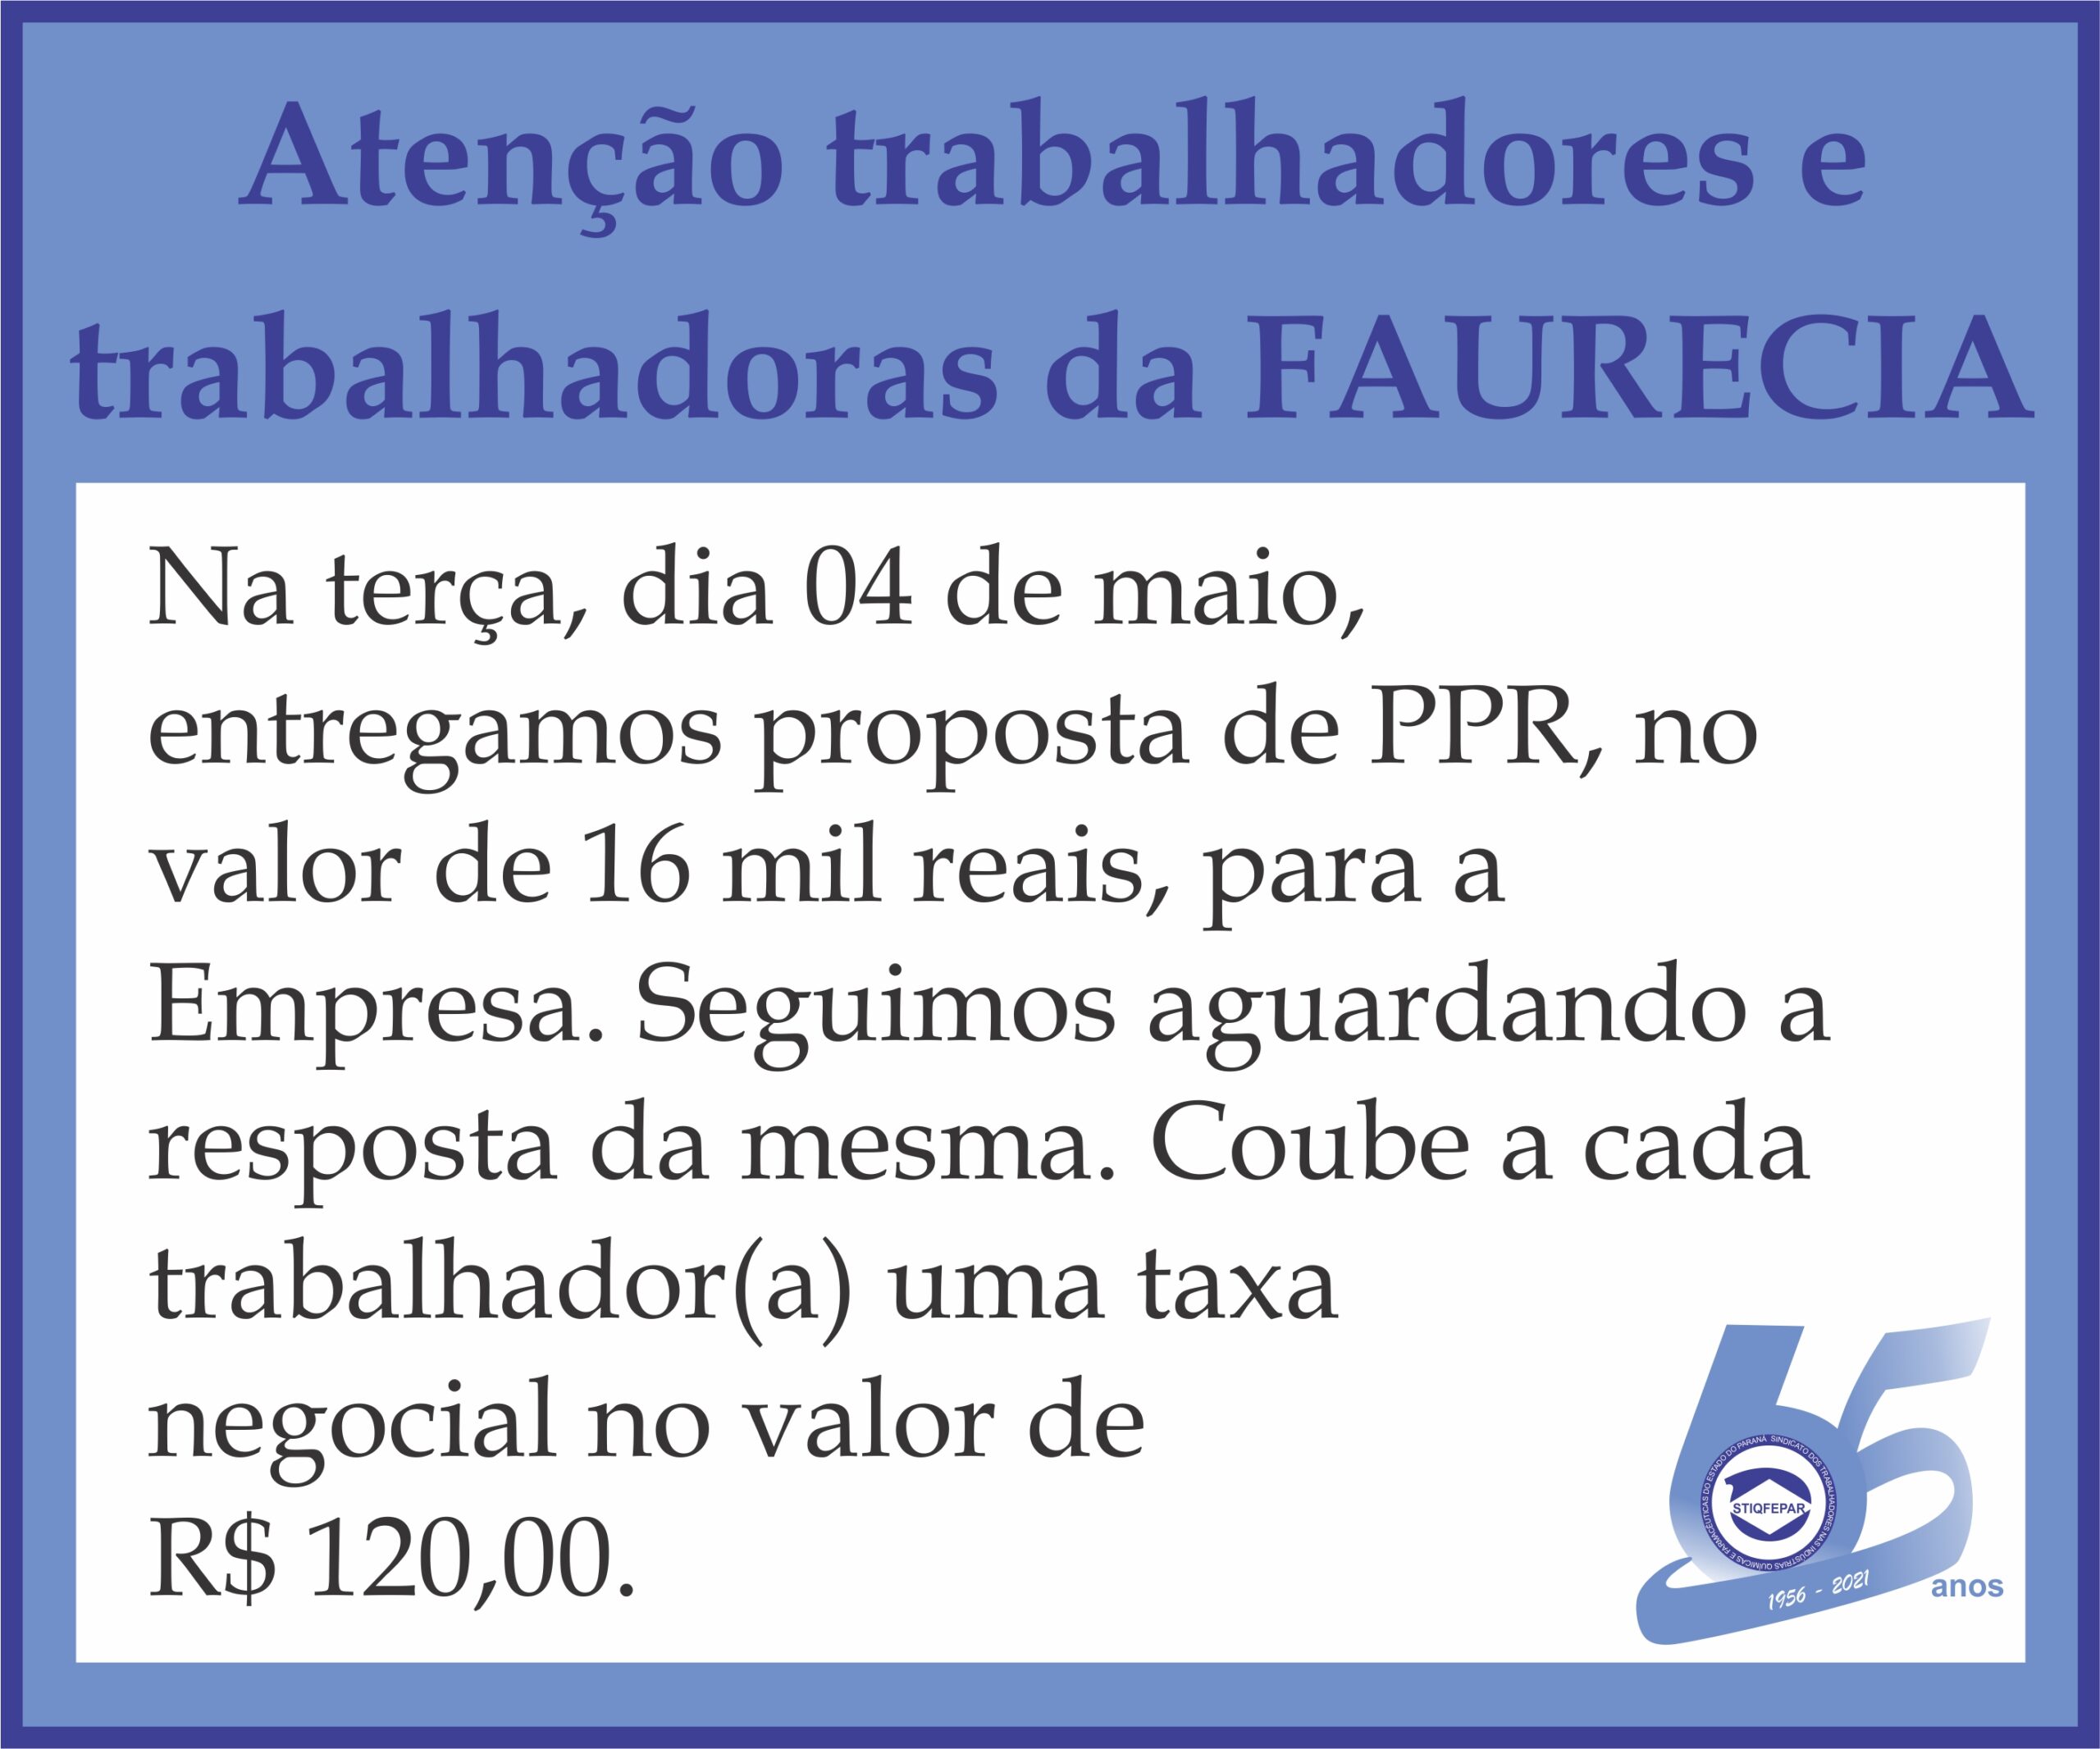 PPR Faurecia – taxa negocial